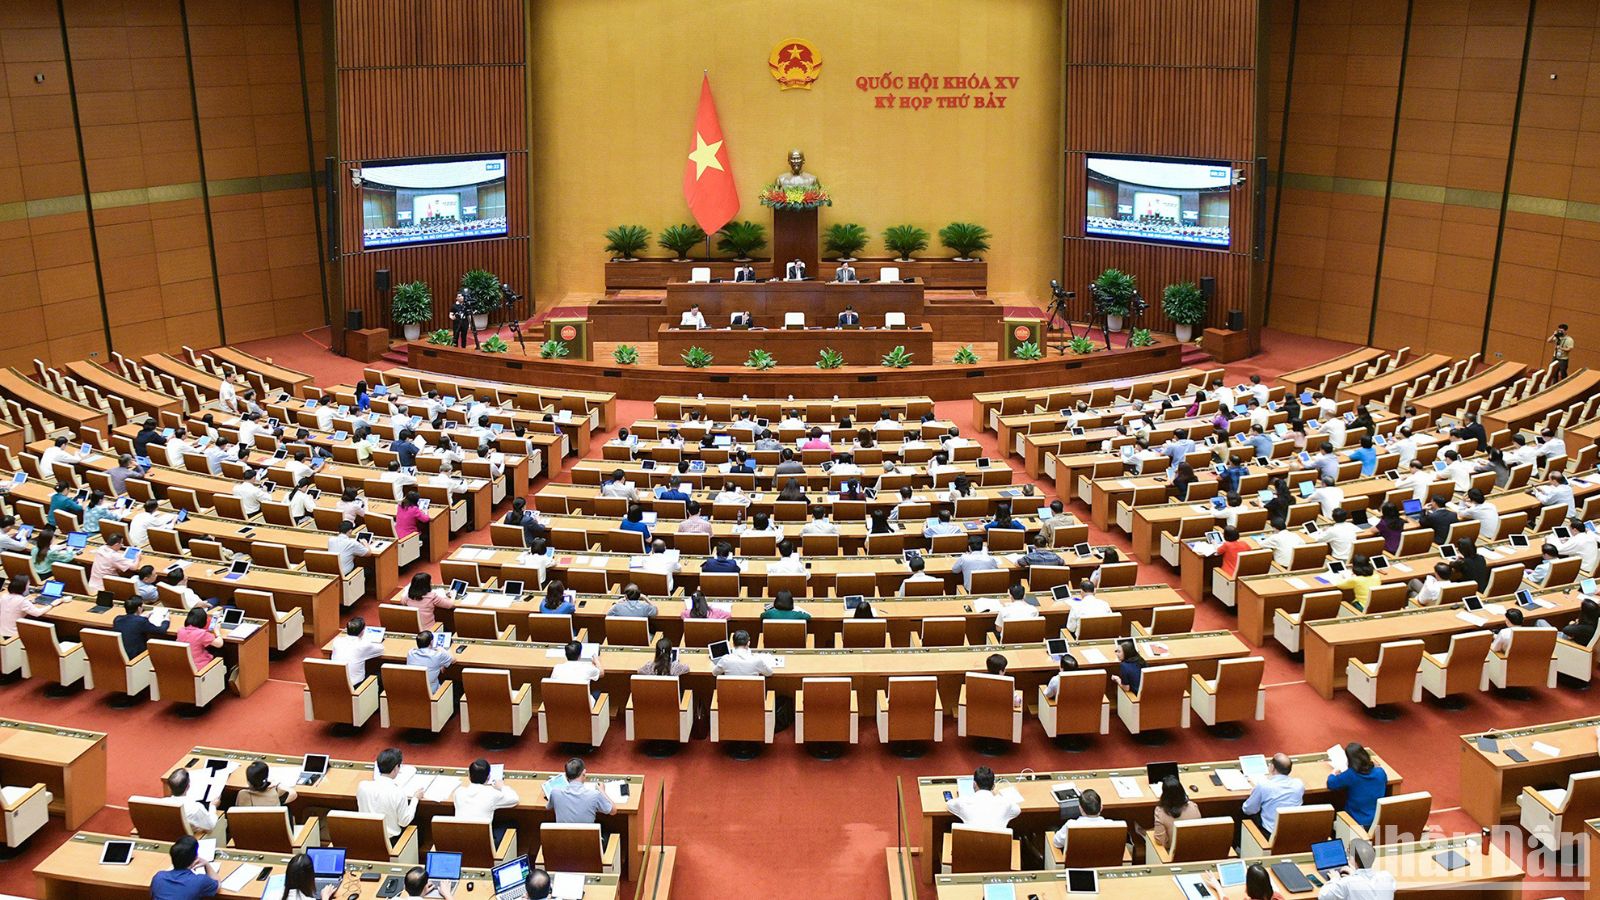 Quang cảnh phiên họp của Quốc hội ngày 28/5 tại Hội trường Diên Hồng.